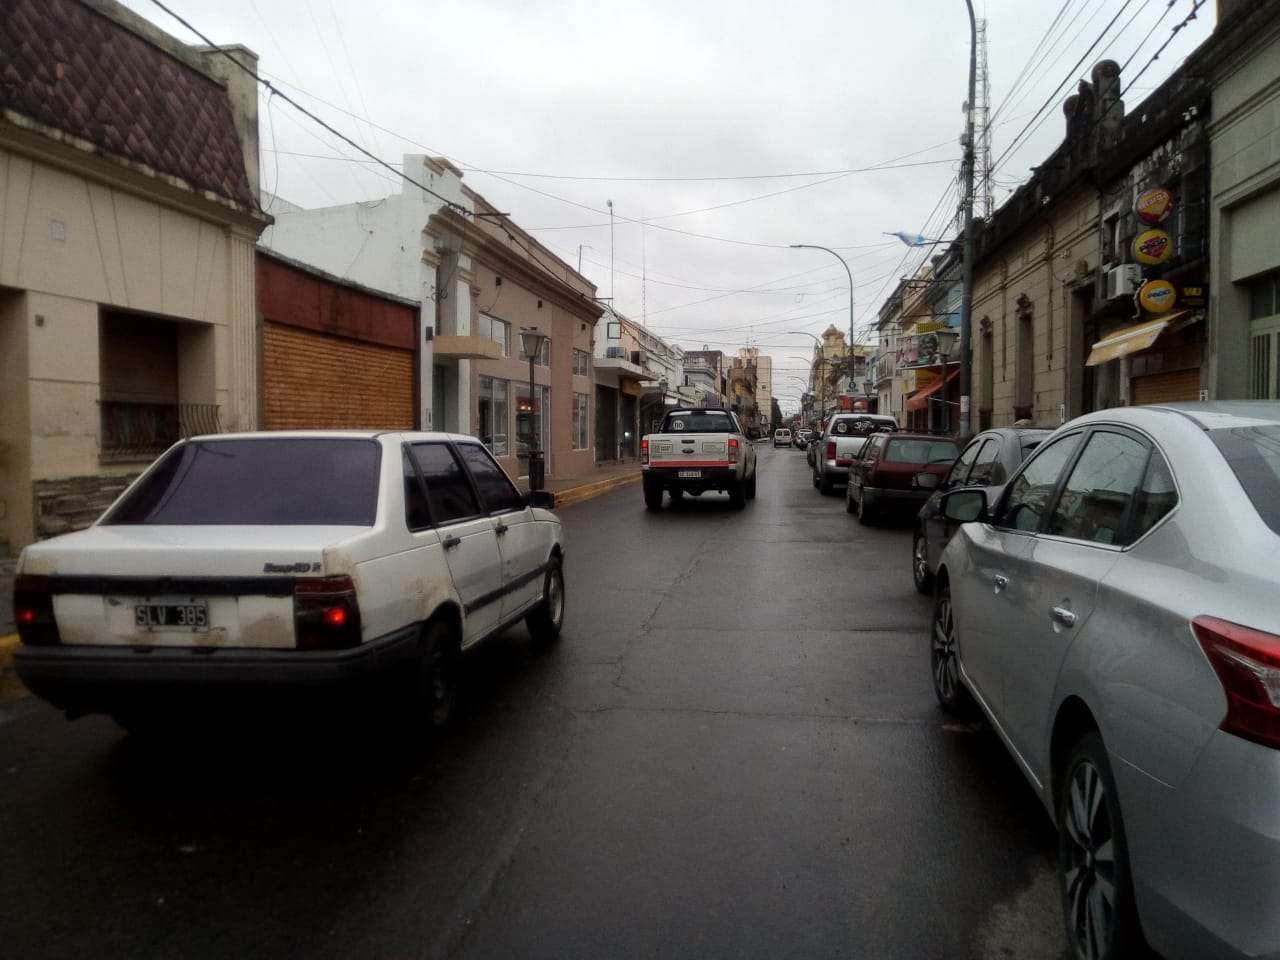 Fin de semana Patrio con temperaturas frescas en Gualeguay